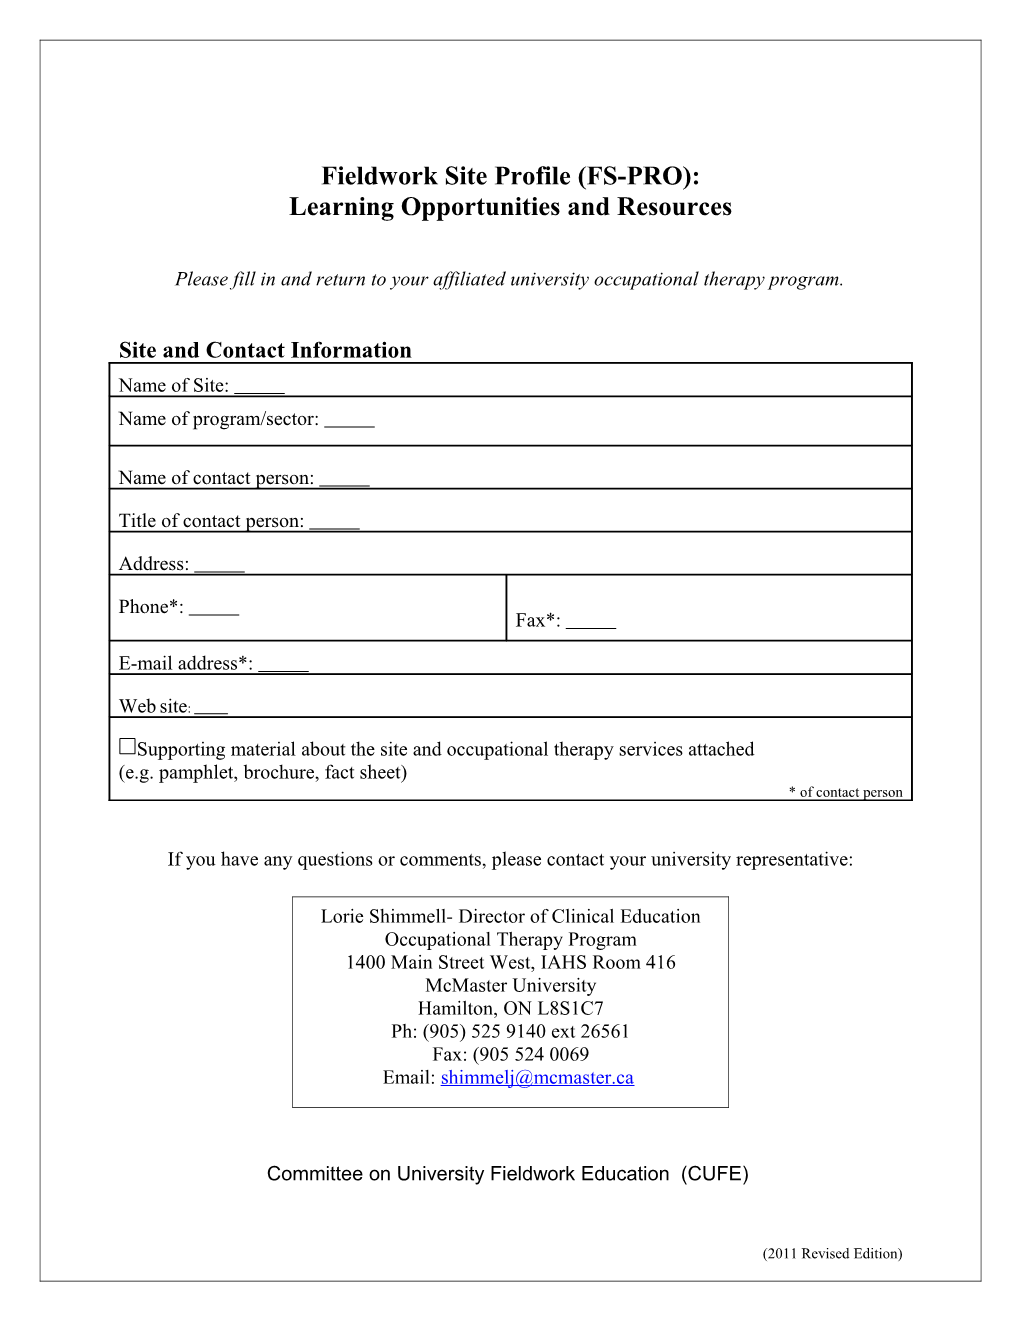 Fieldwork Site Profile (FS-PRO)